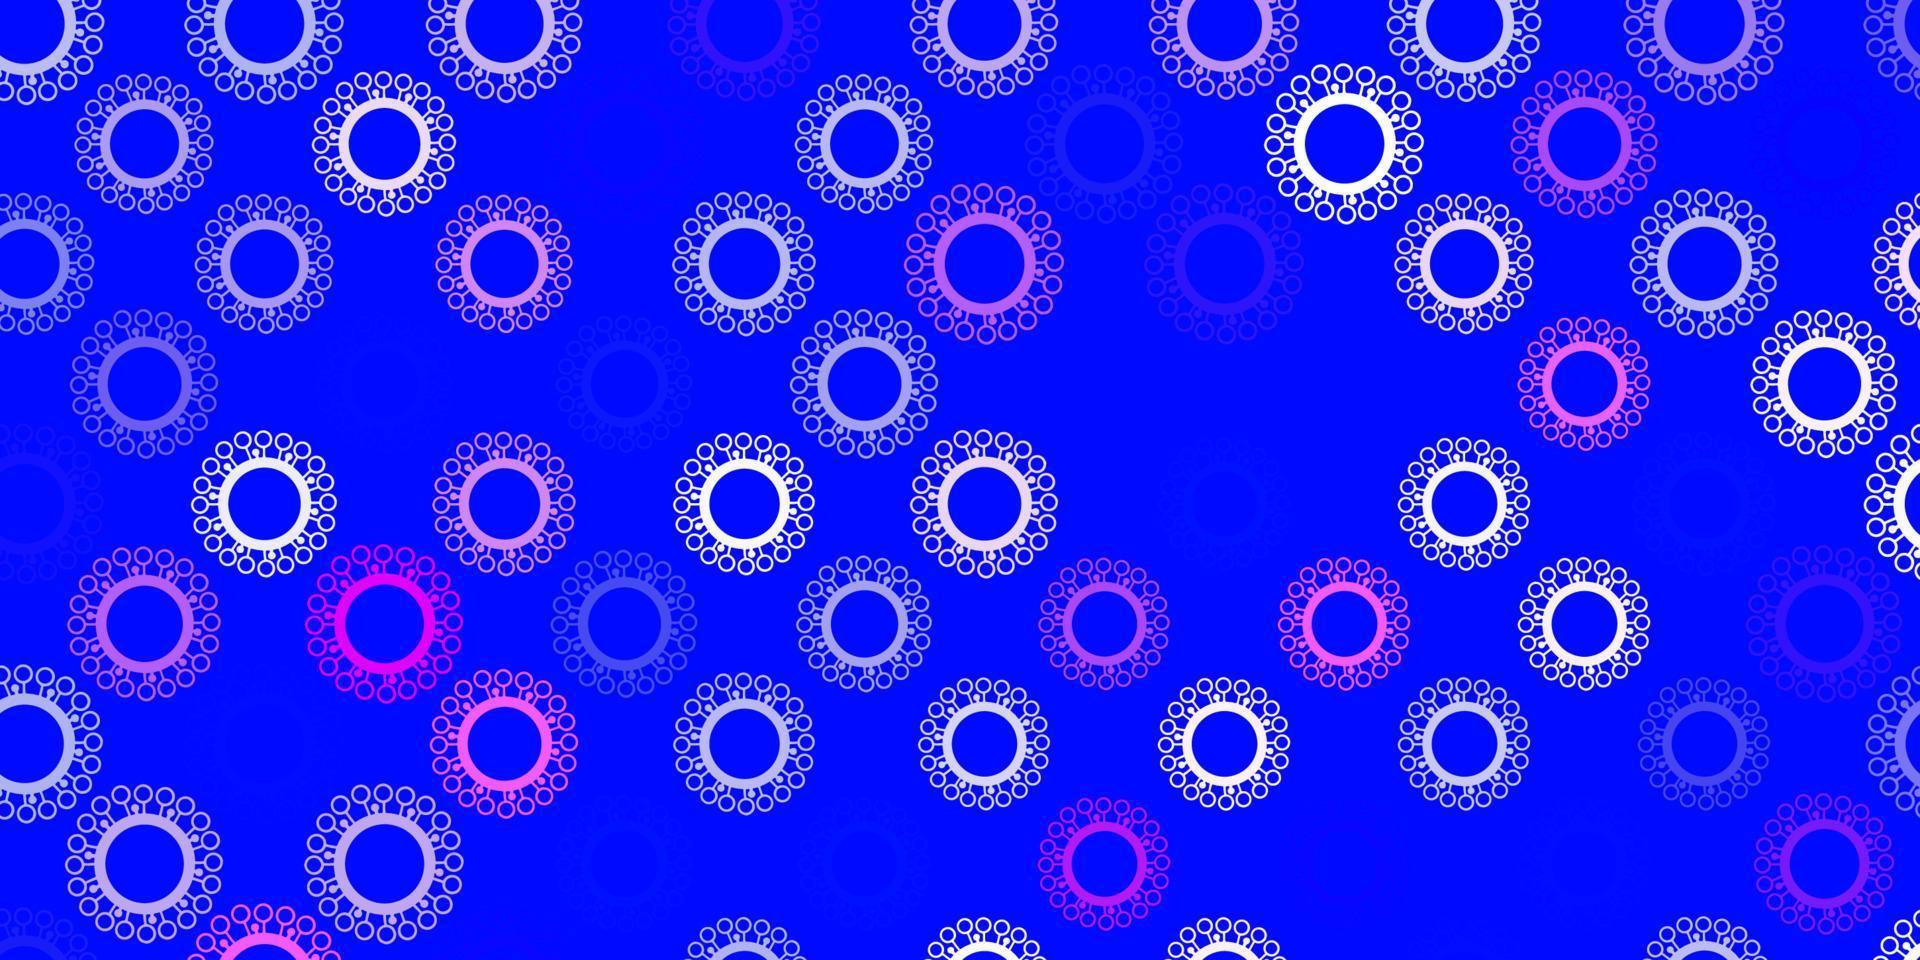 ljusrosa, blått vektormönster med coronaviruselement. vektor